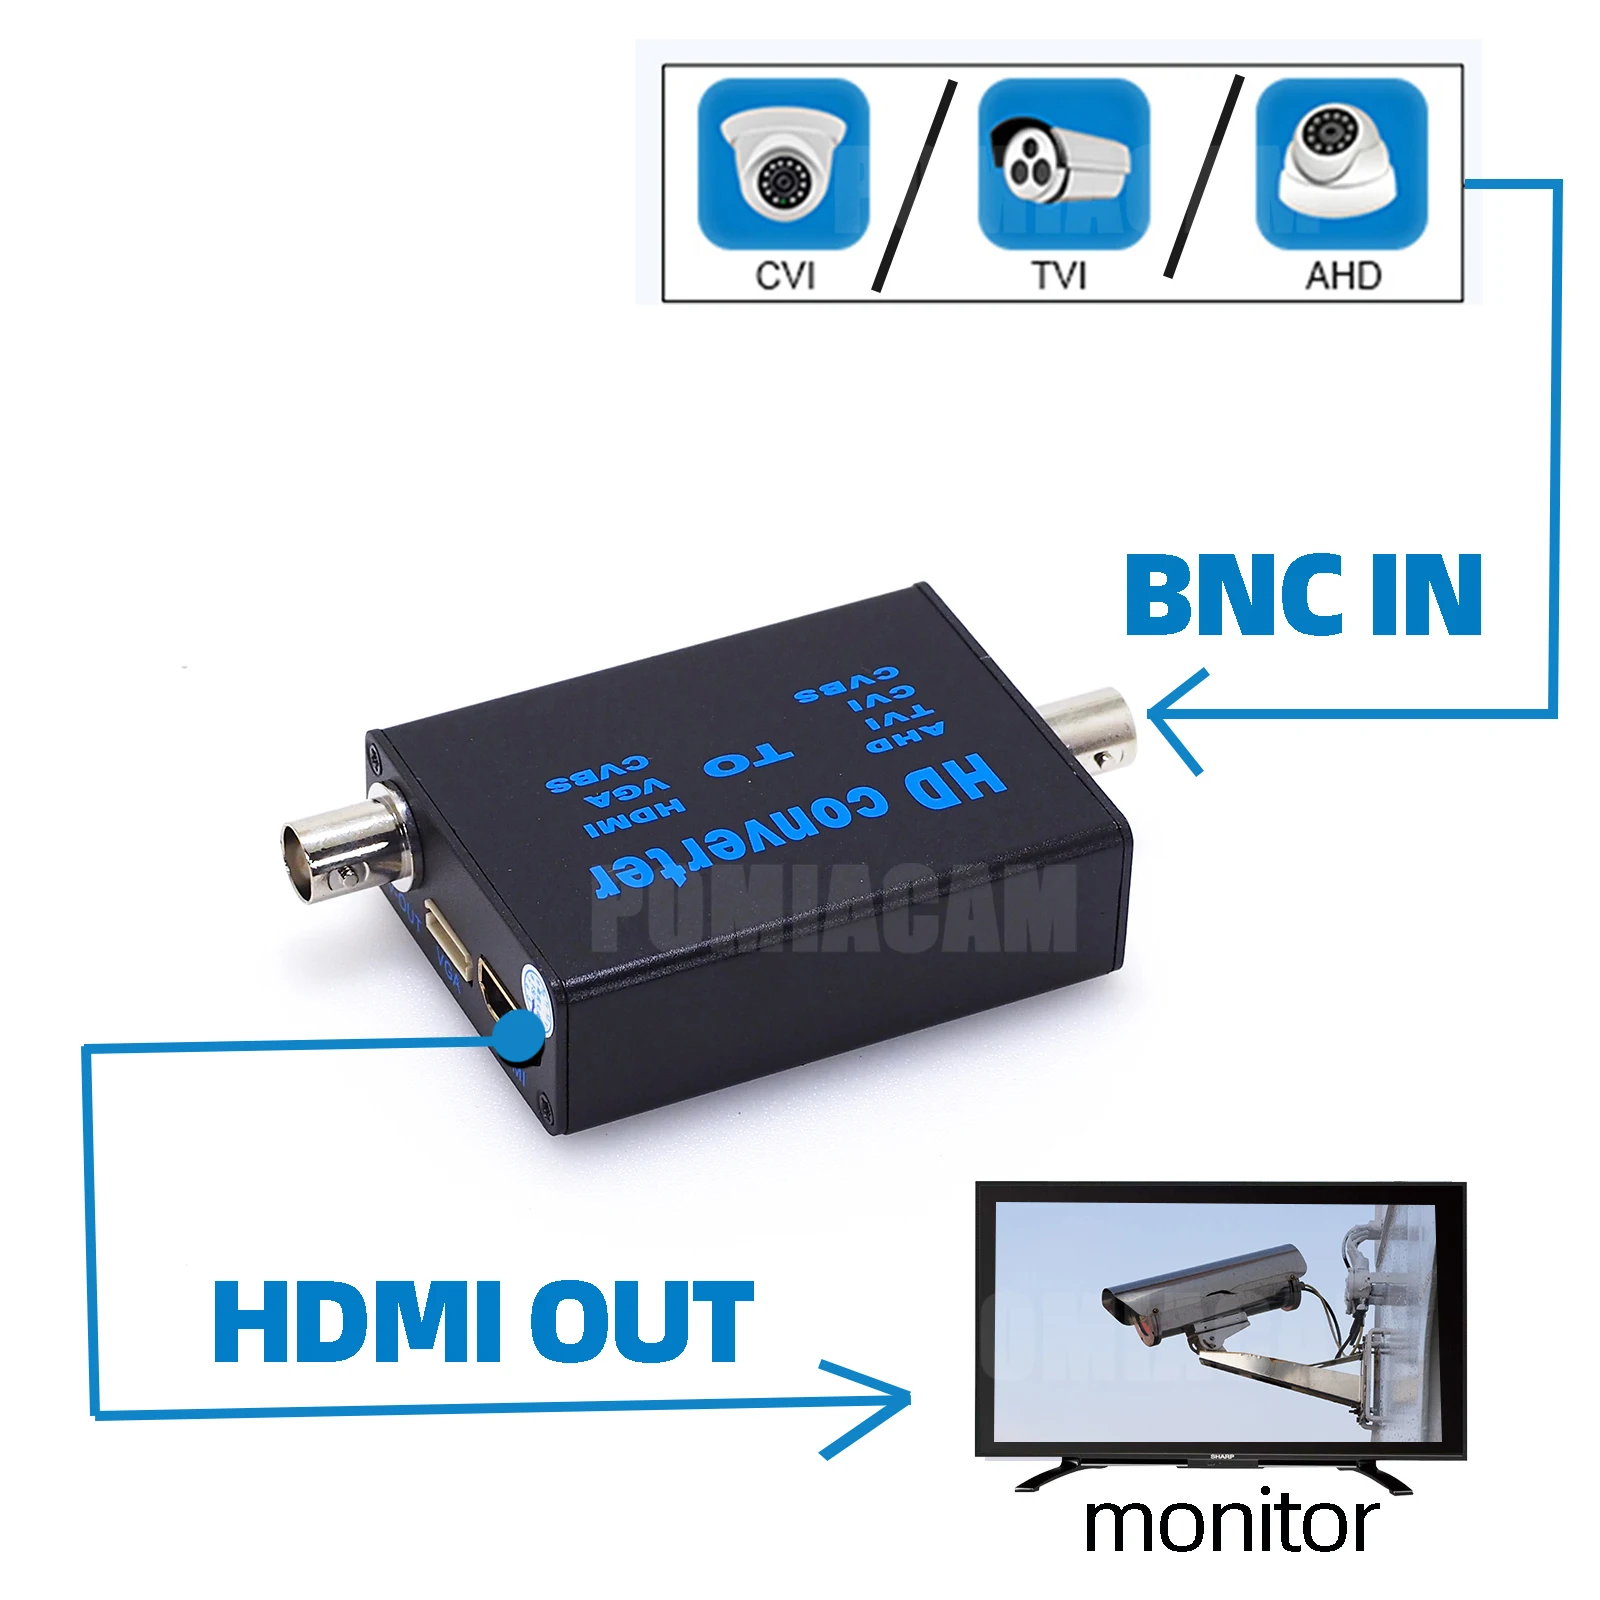 Конвертер BNC в HDMI, конвертер видеосигнала высокой четкости, конвертер сигнала AHD/TVI/CVI/CVBS в HDMI/VGA/CVBS от AliExpress RU&CIS NEW